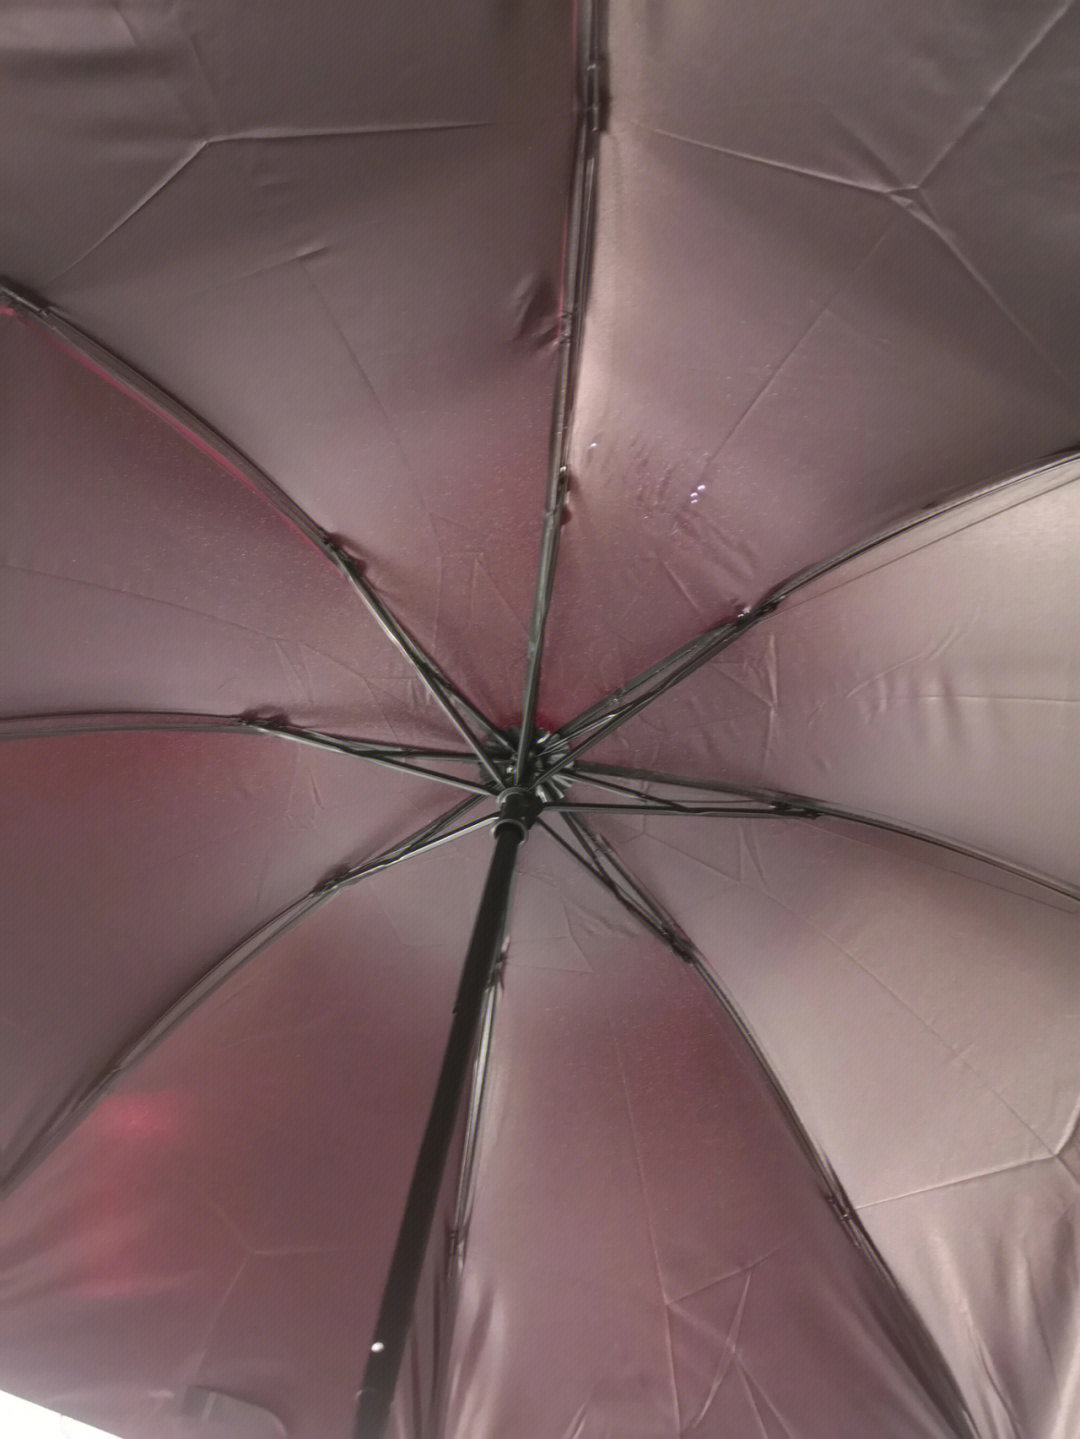 001元的雨伞都挺好就是有几个小洞洞